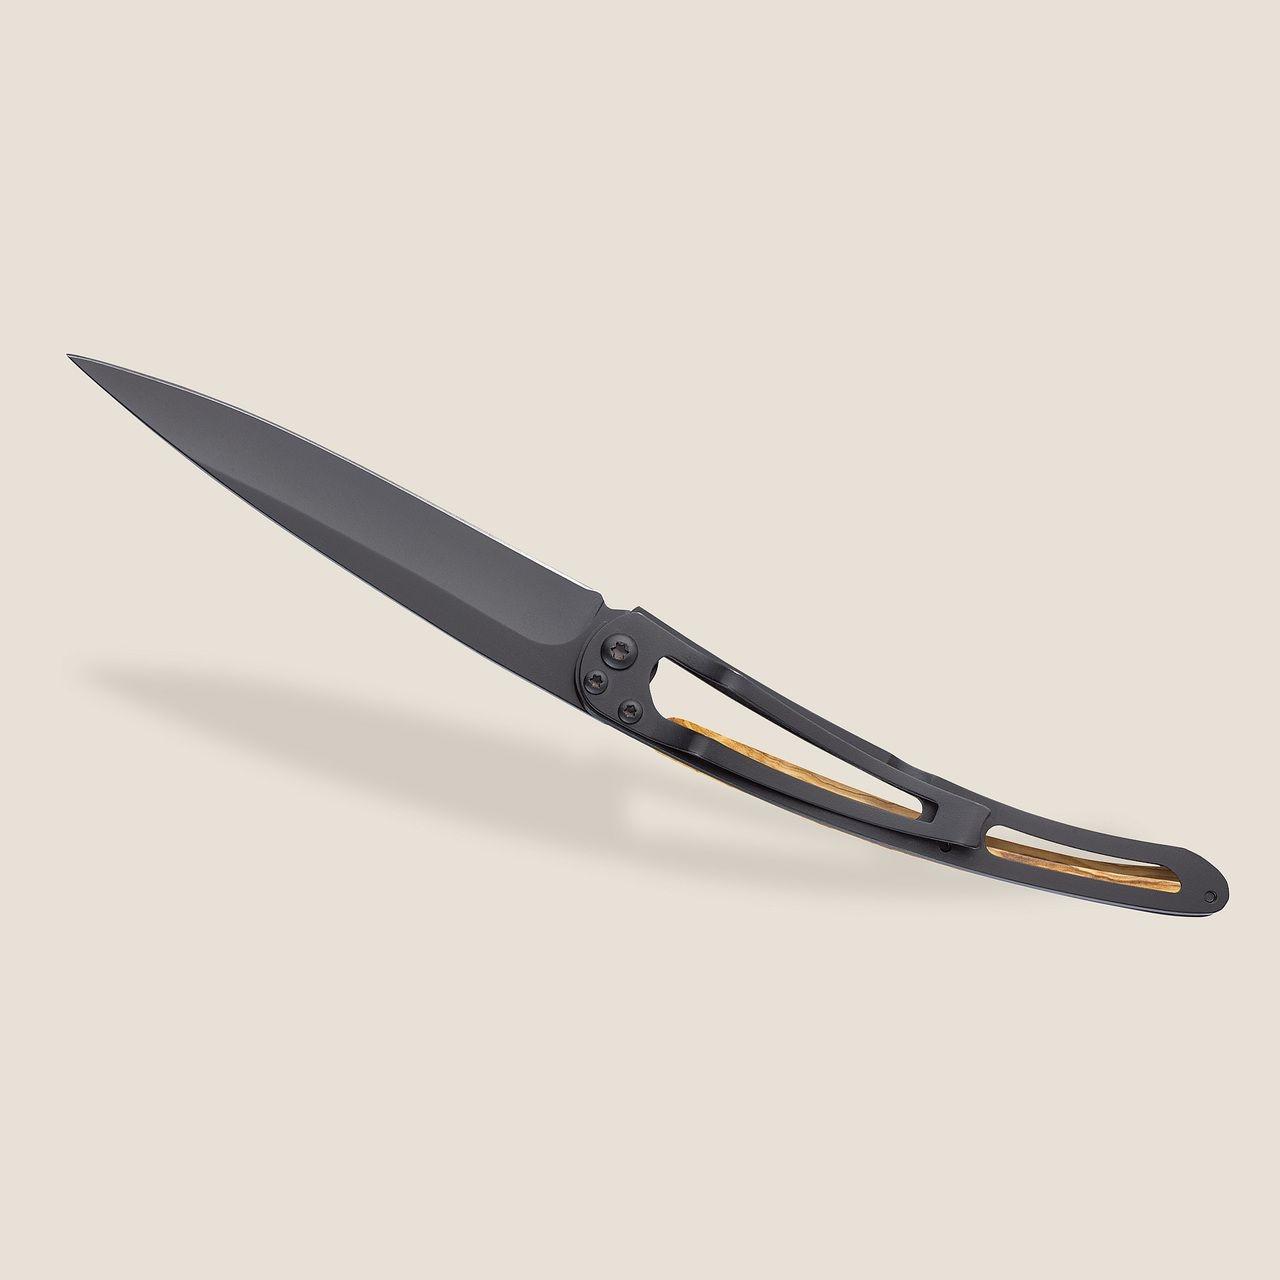 Deejo 27g, Pocket Knife, Black, Olive Wood